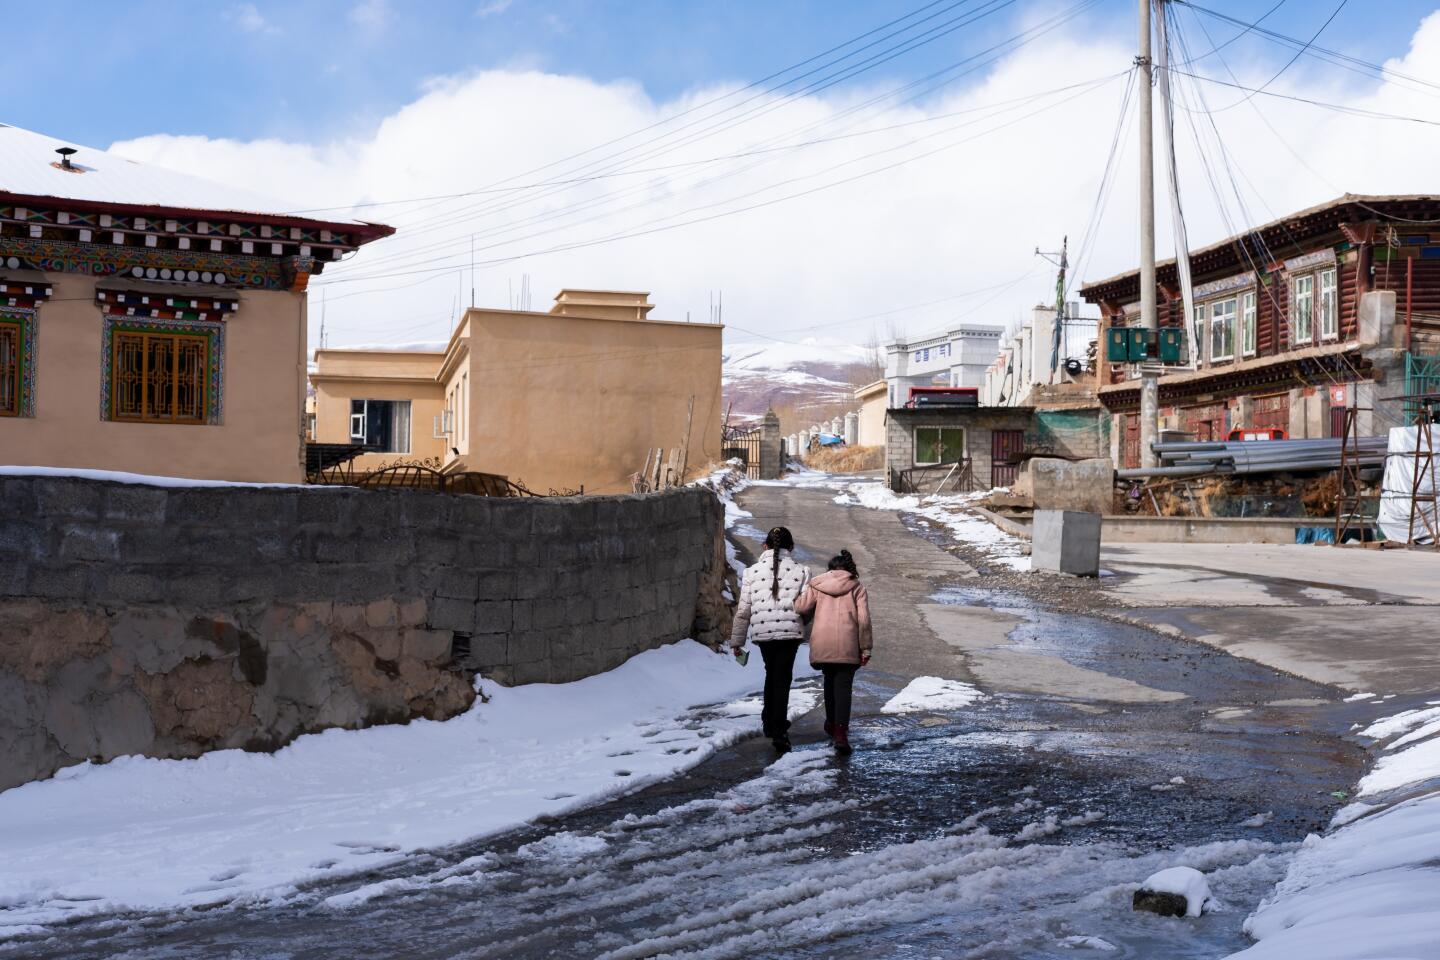 Two women walk up a snowy road in Garze on Feb. 9, 2020.